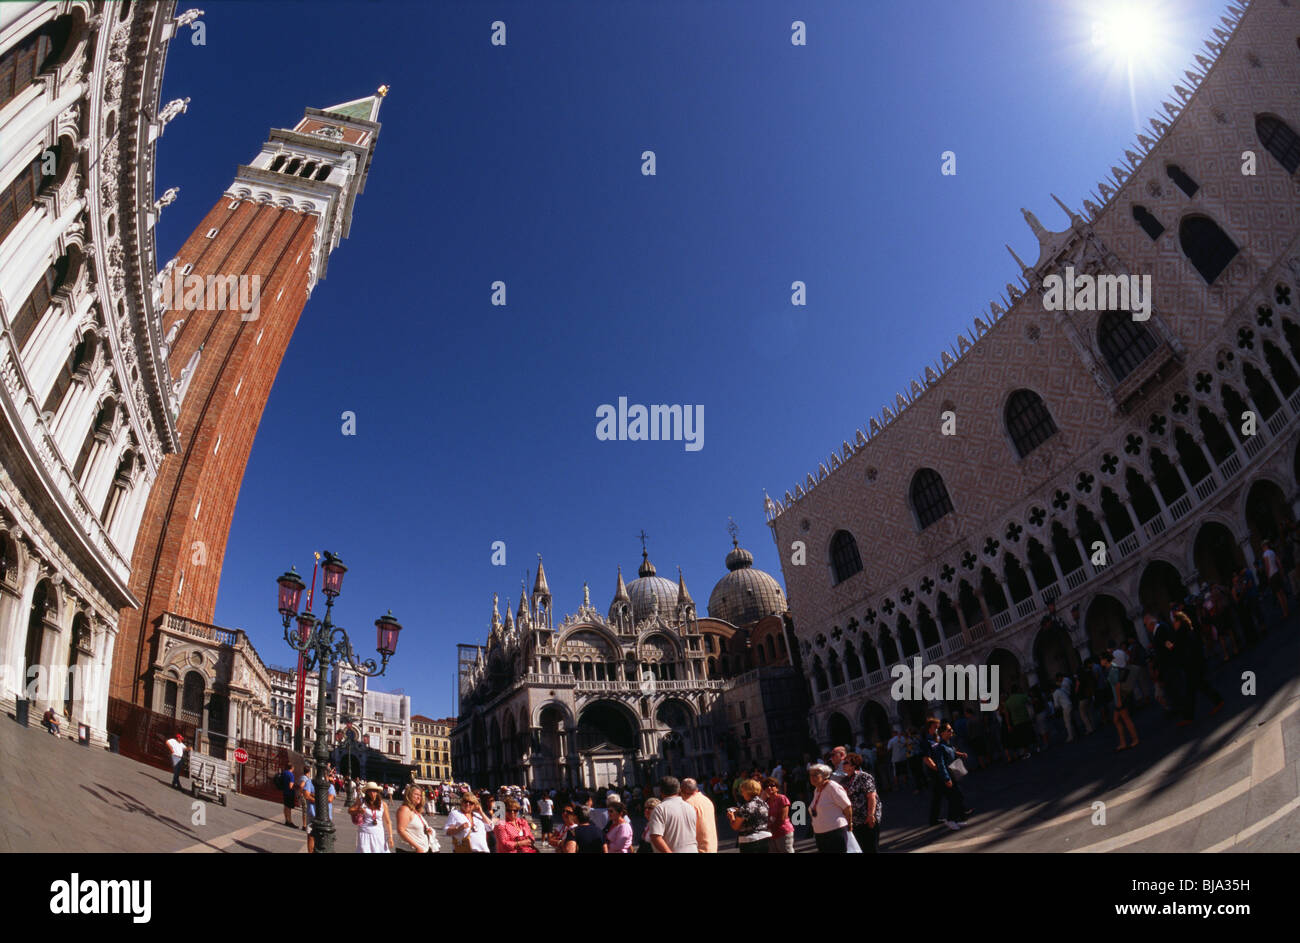 Venecia, de julio de 2008 -- Los turistas en la Plaza de San Marcos con el Campanile (campanario), de la basílica de San Marco y del Palazzo Ducale (Doges P Foto de stock